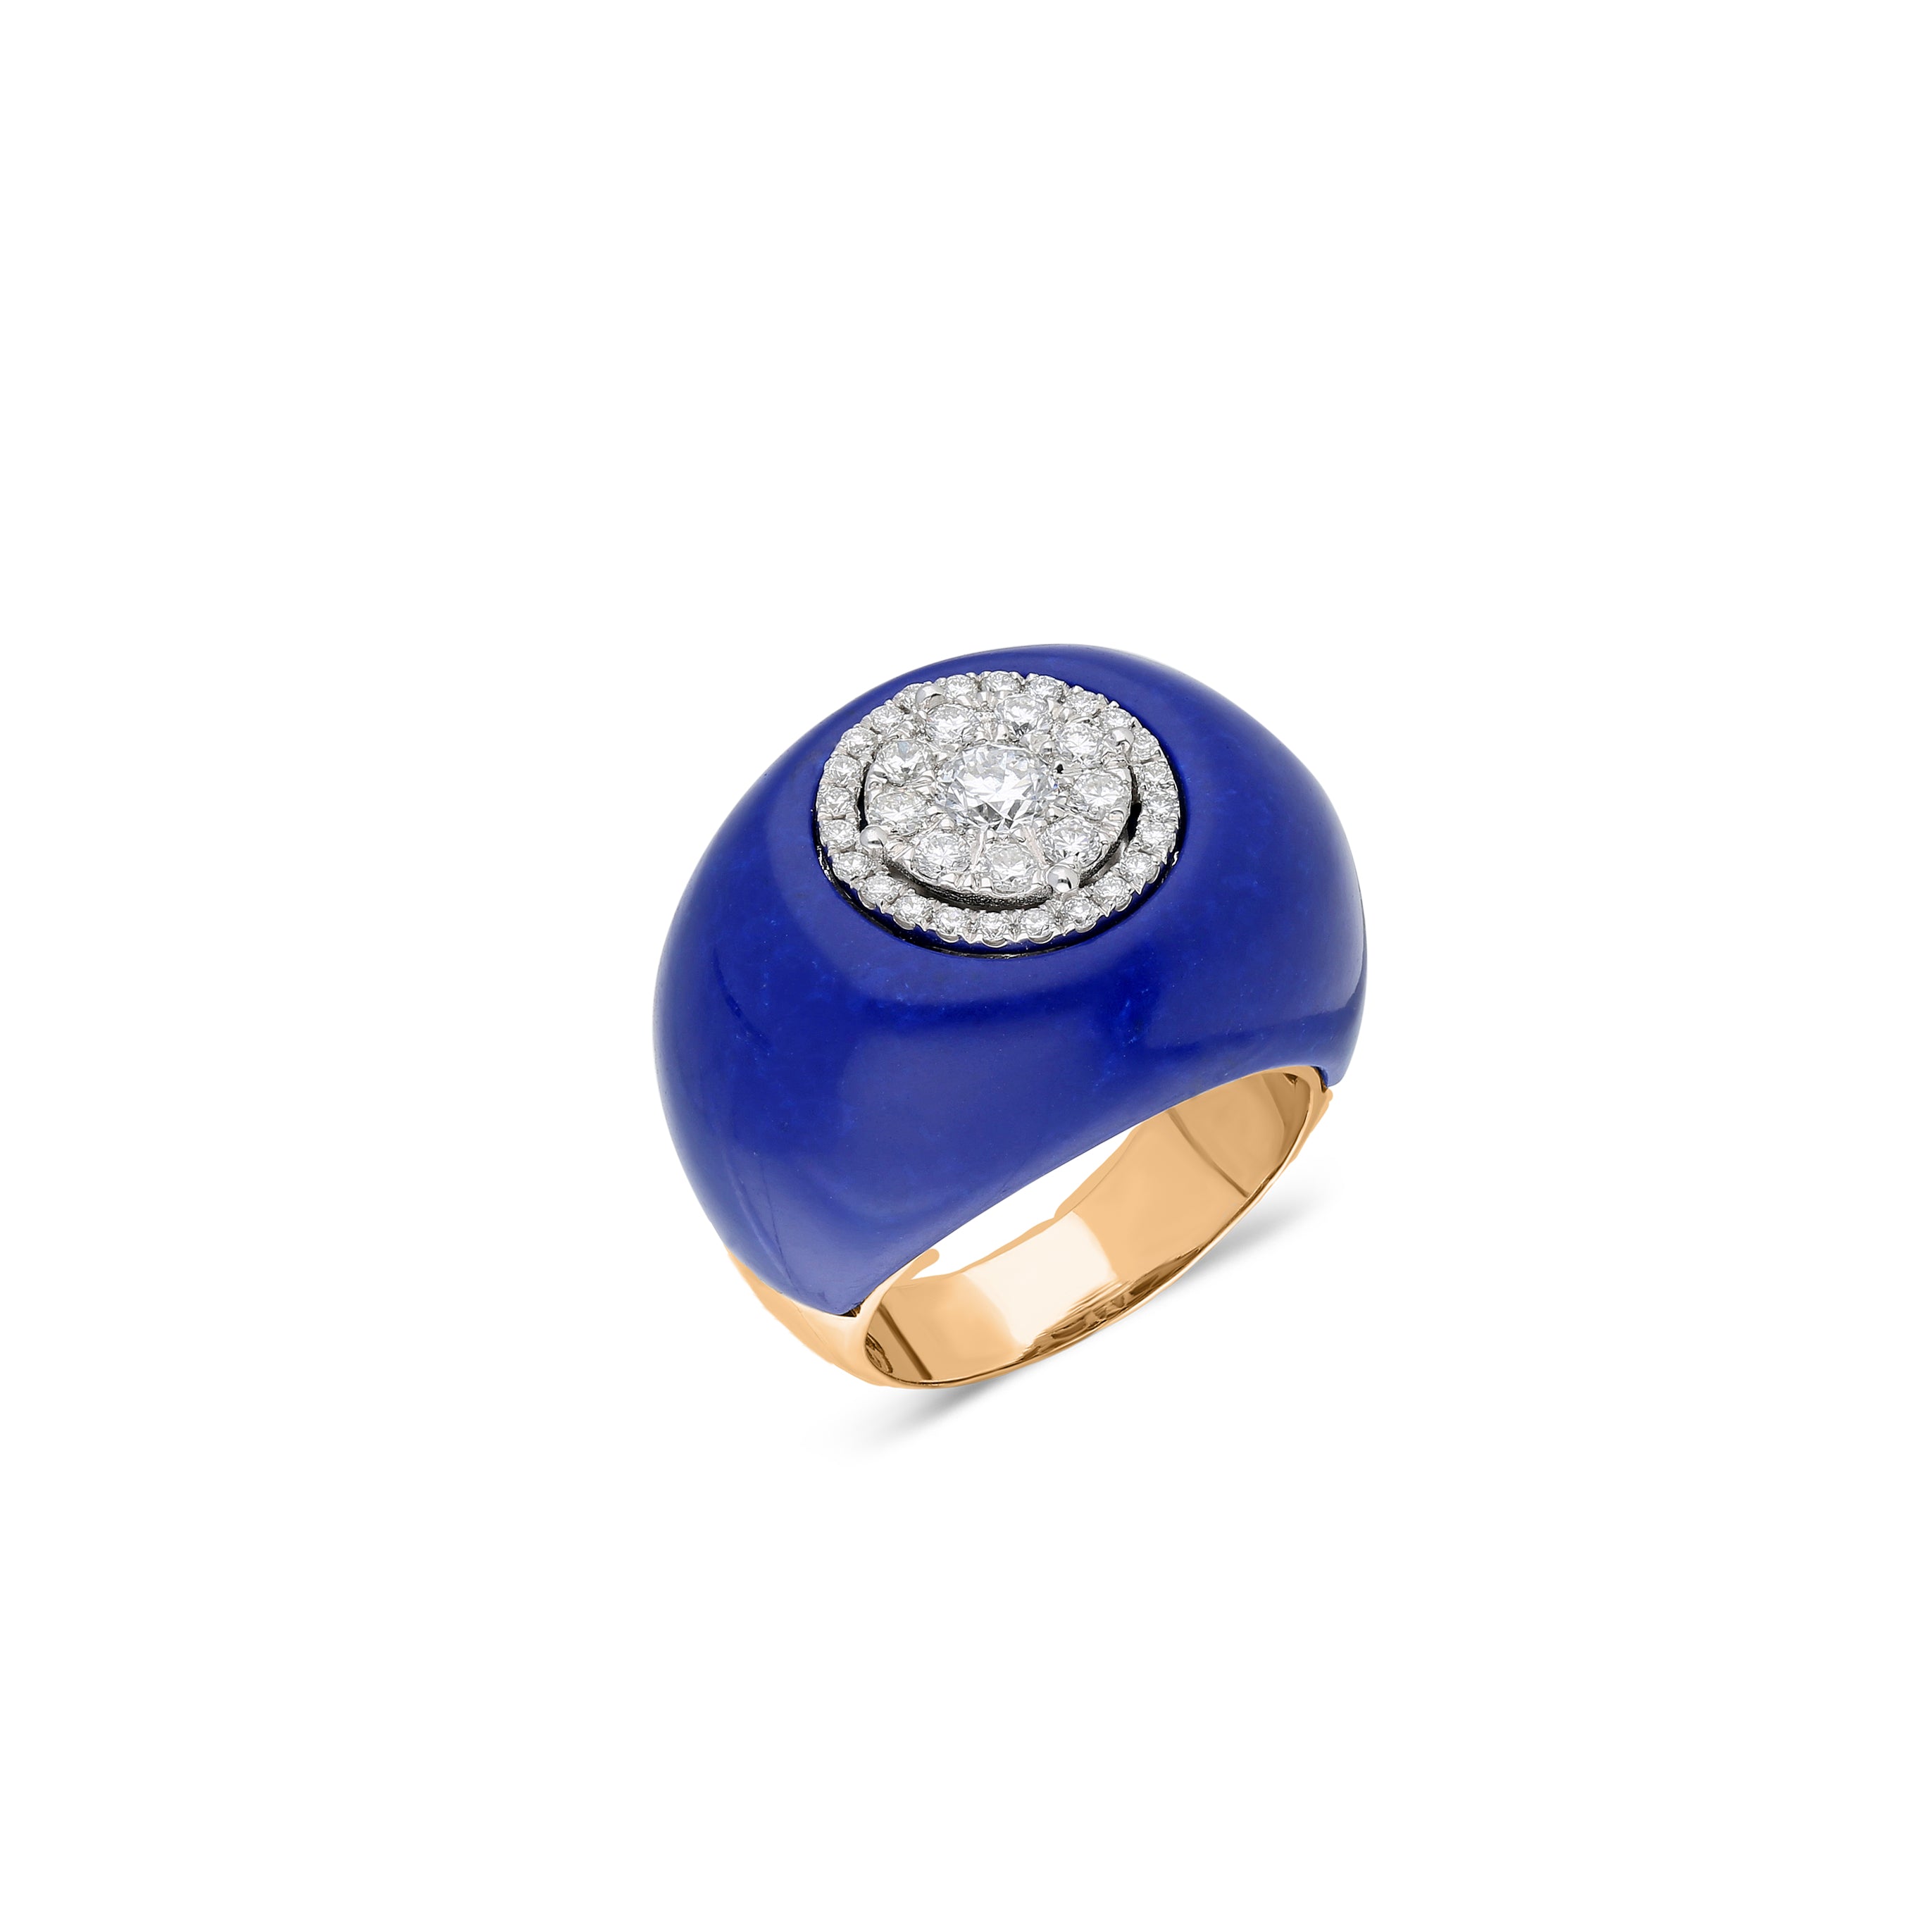 Neutra Dome Ring - Lapis Lazuli